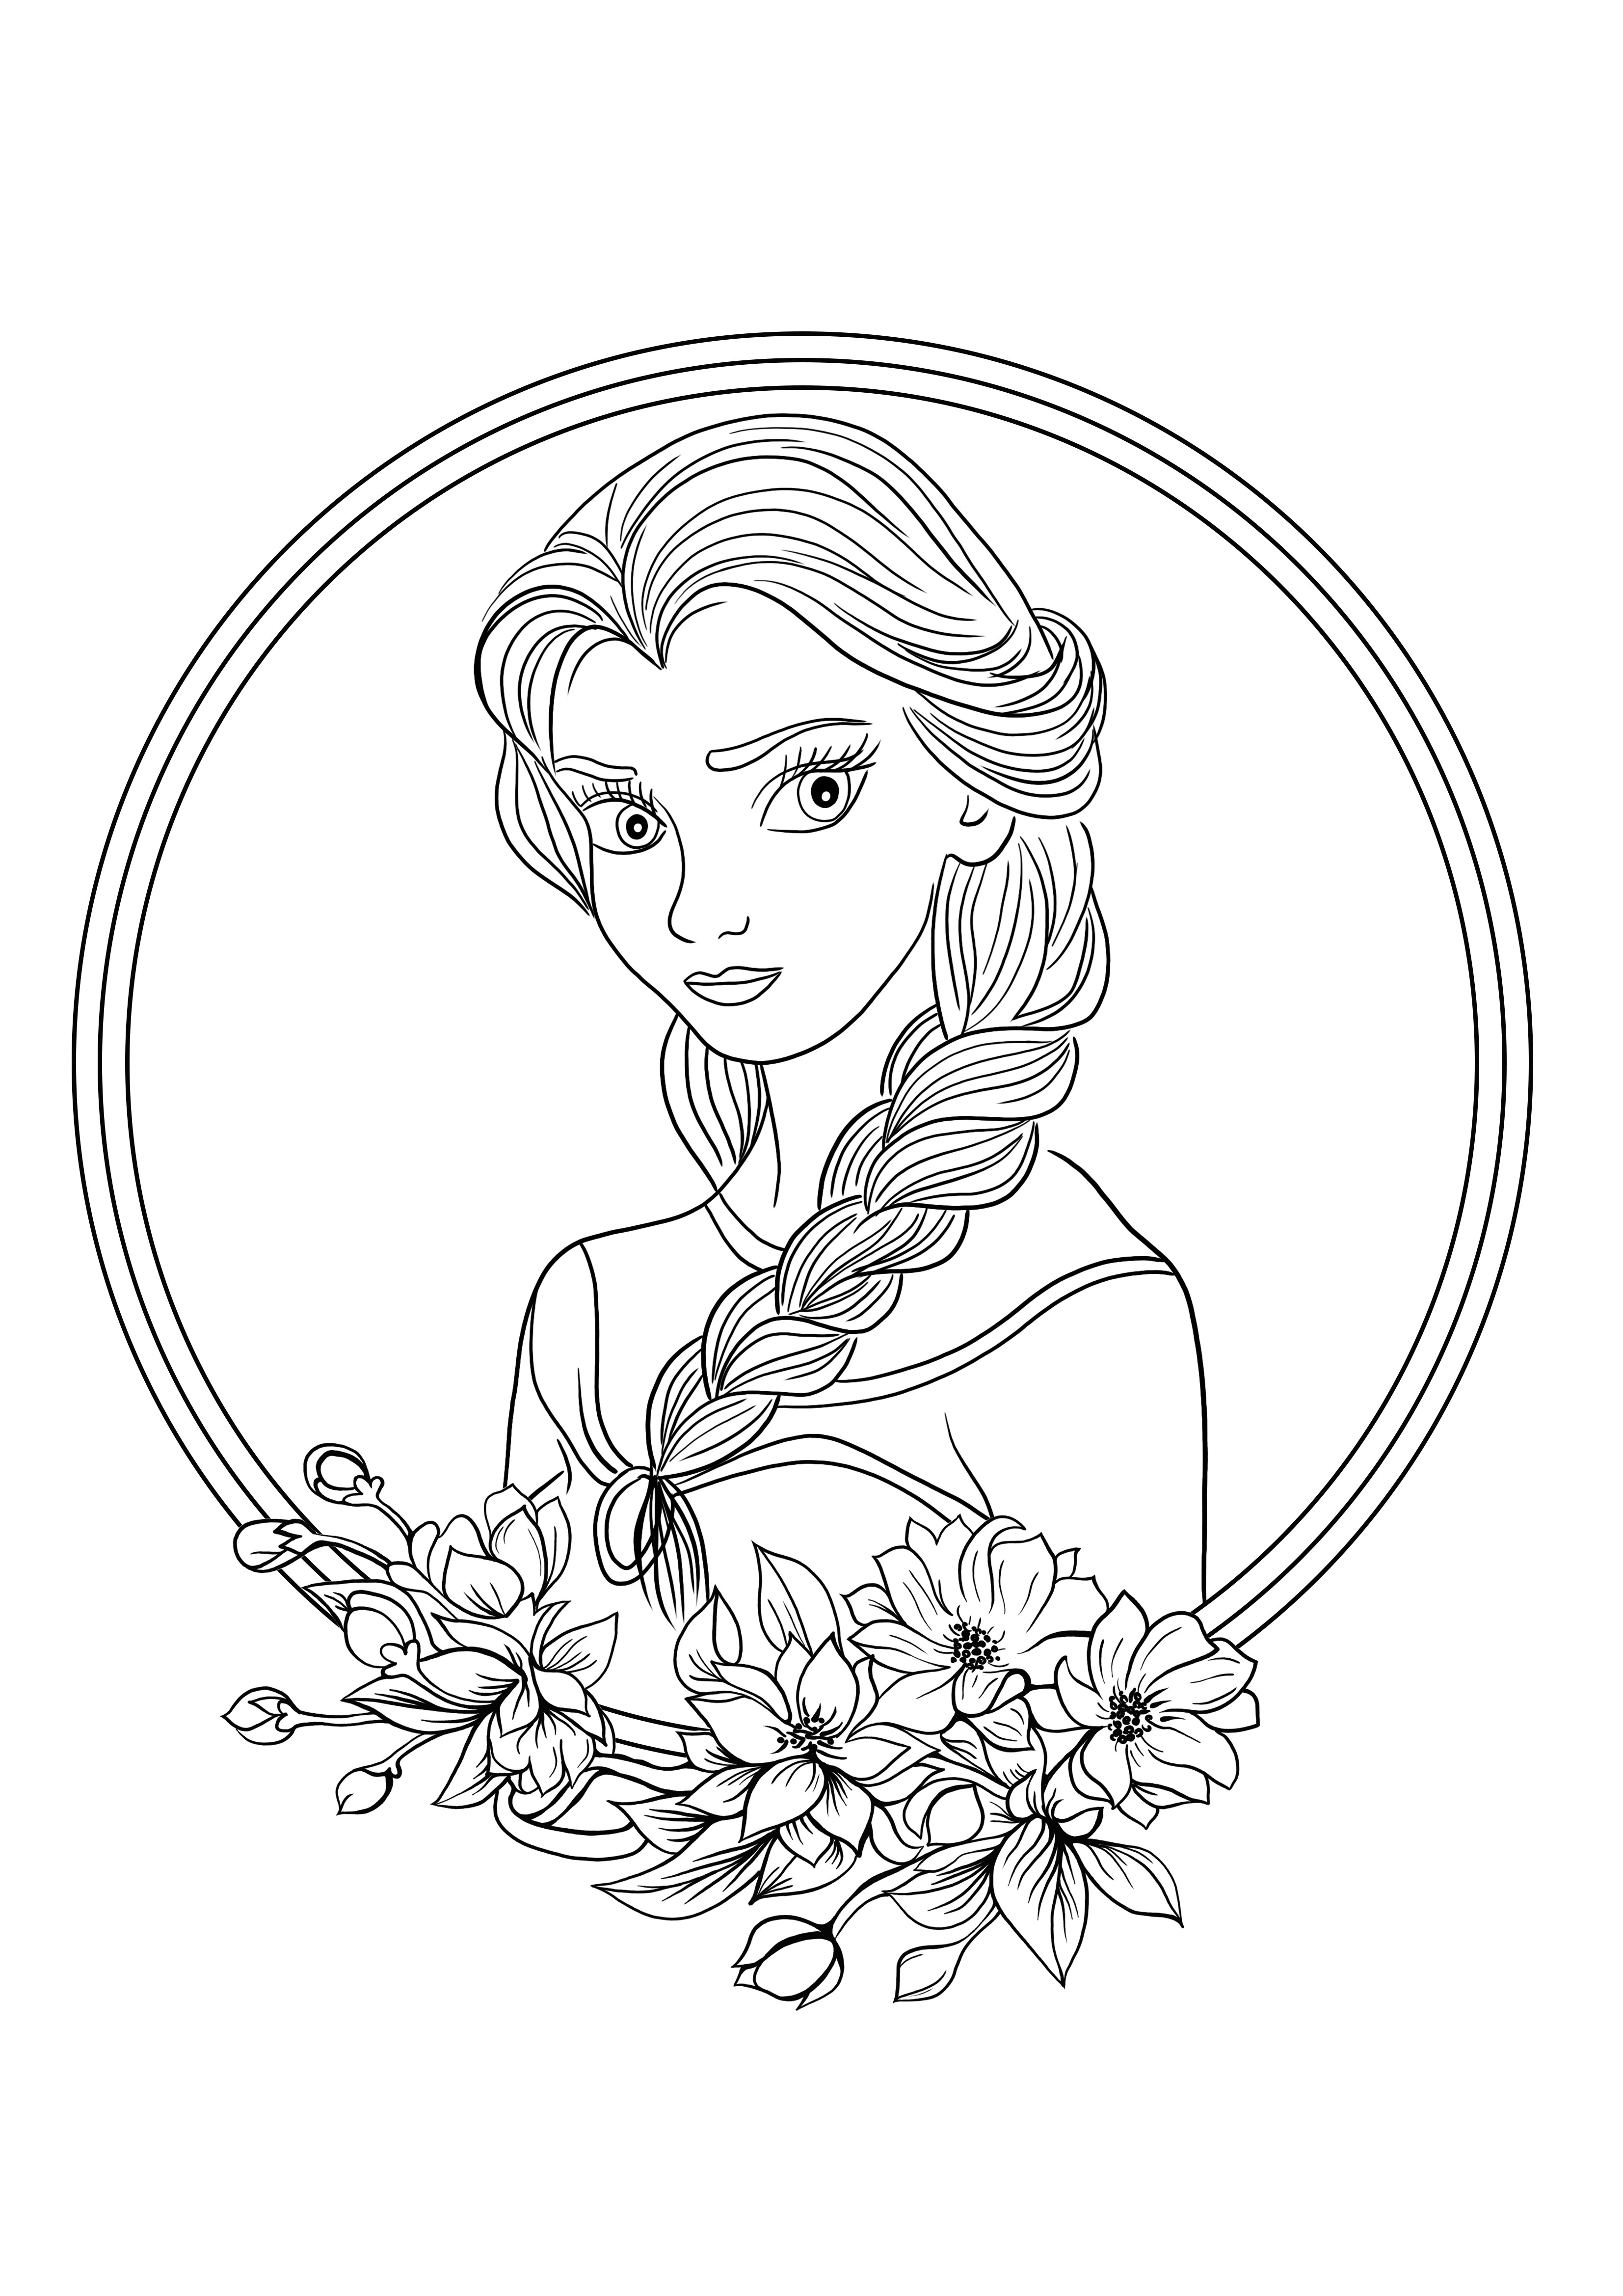 Güzel Elsa Prensesi Çocuklar için boyama için ücretsiz yazdırılabilir